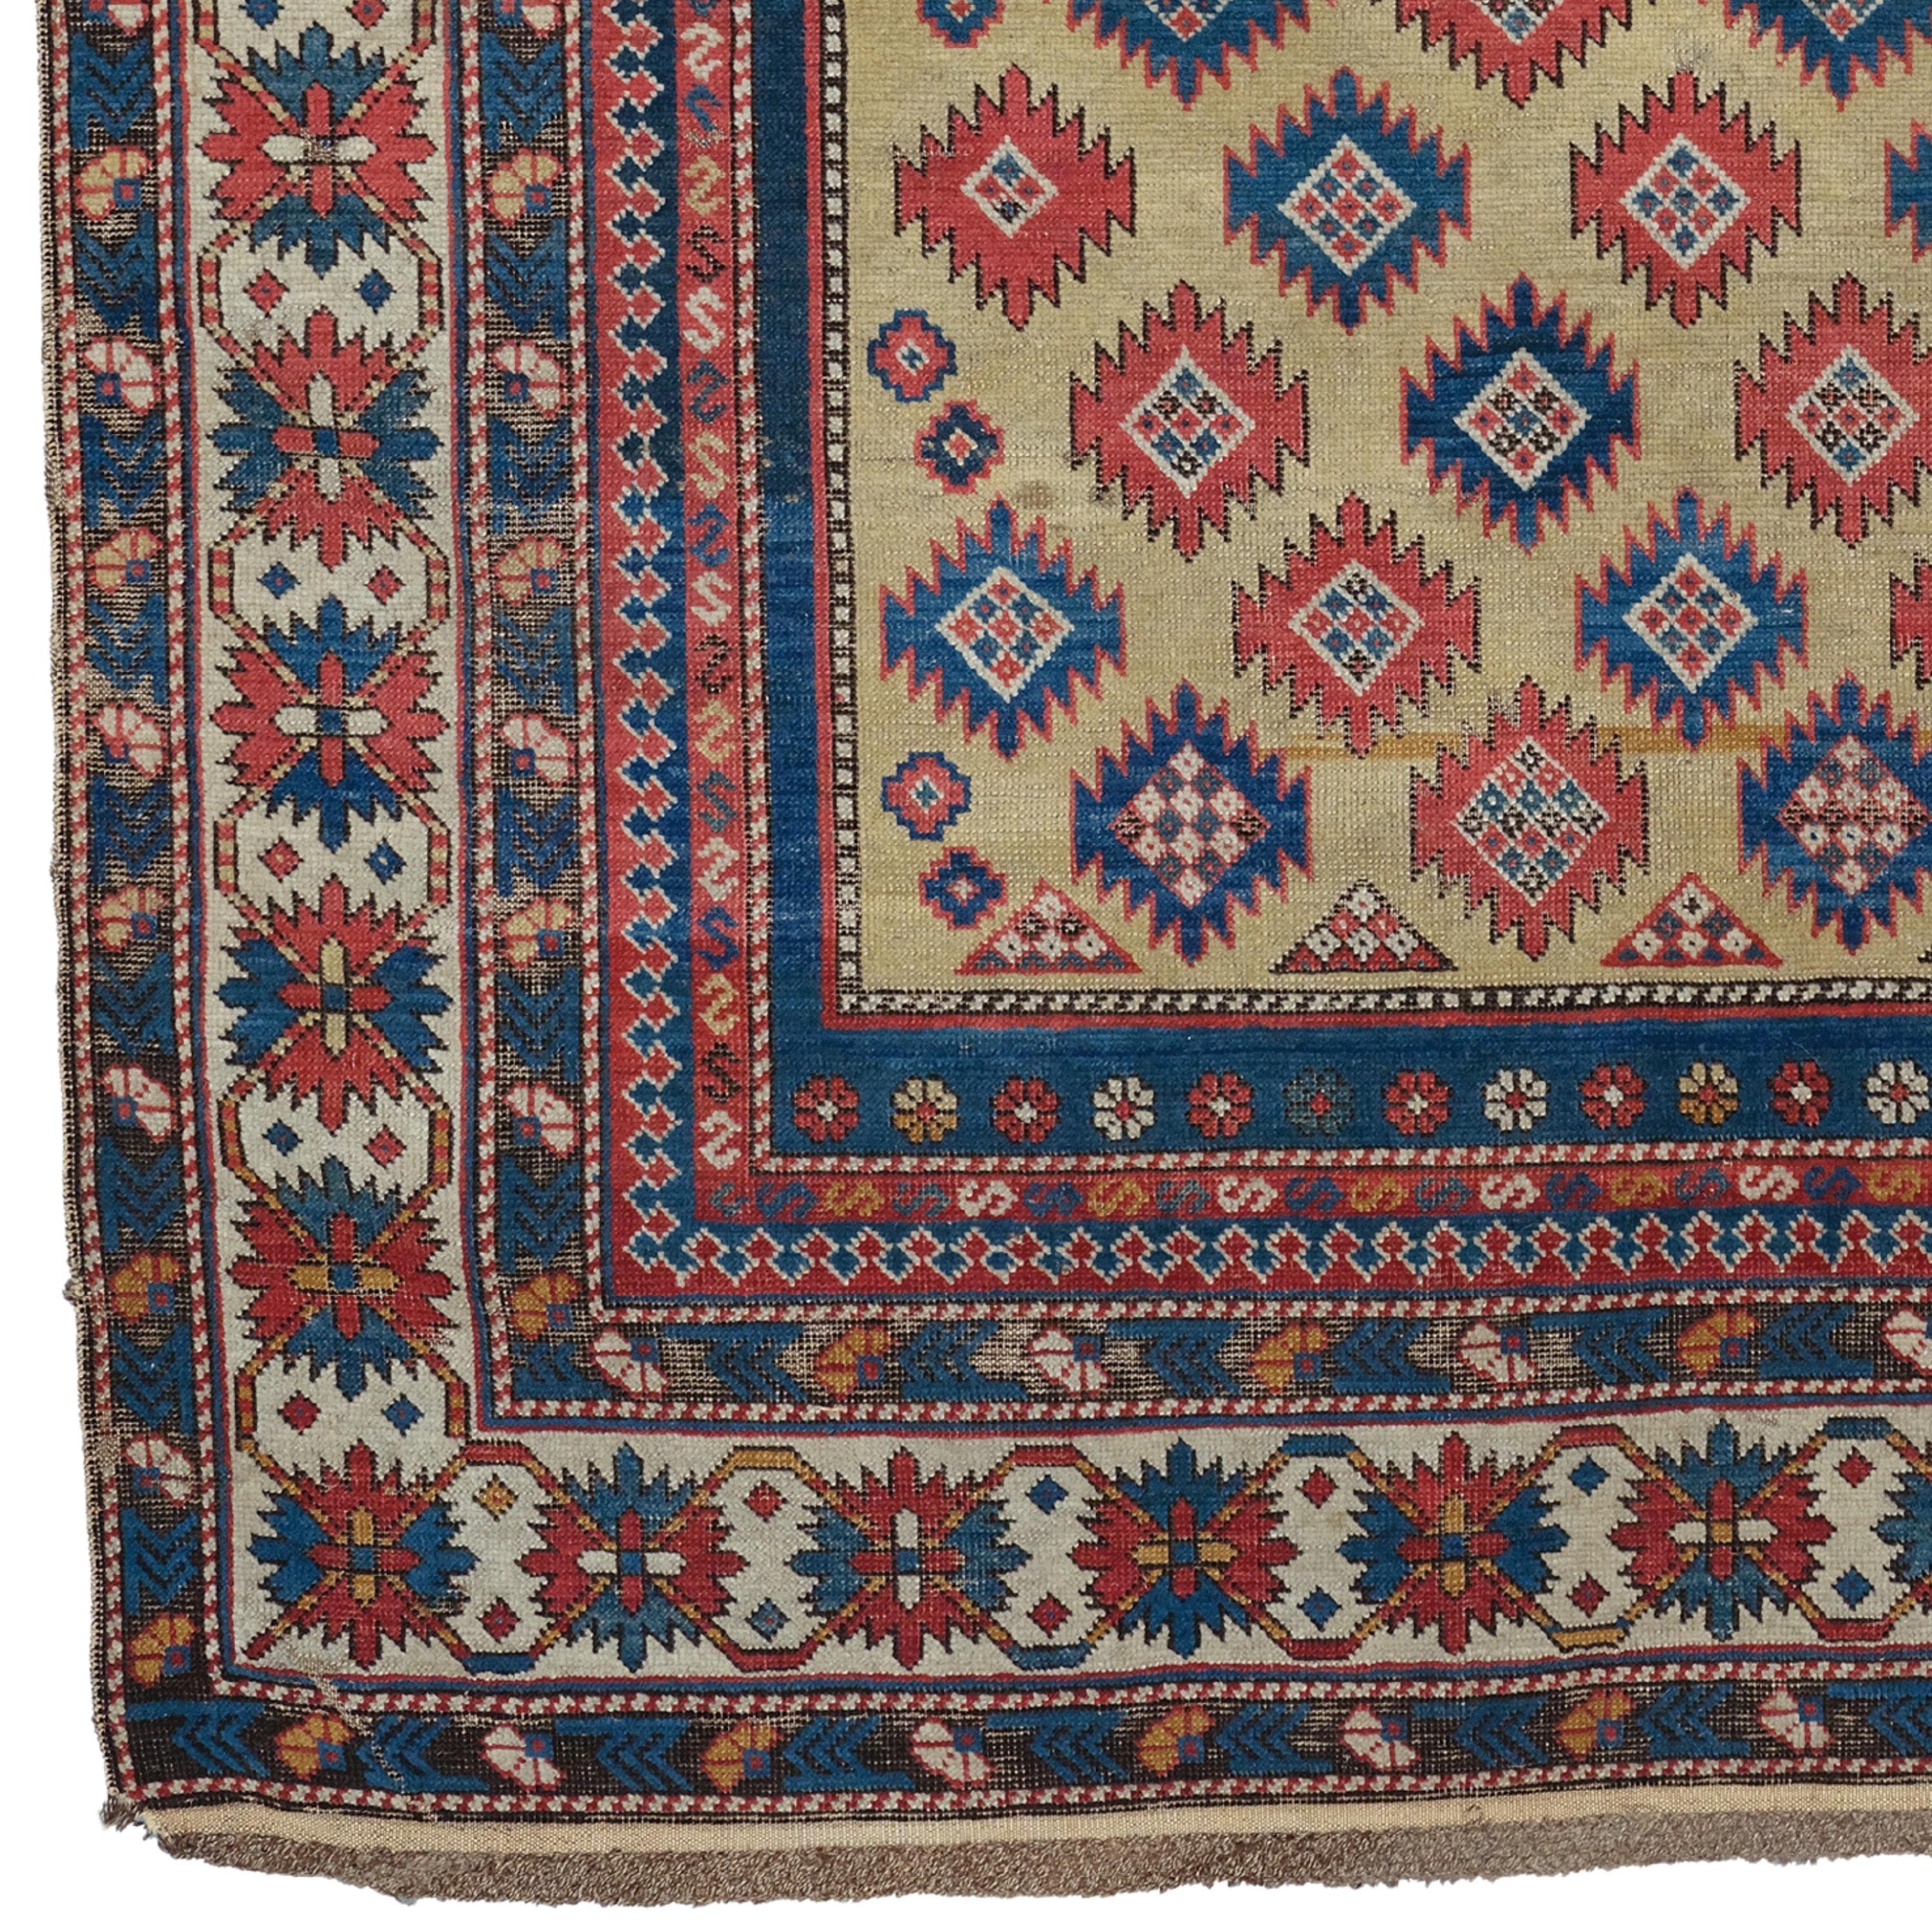 Tapis caucasien Prayer Shirvan  Circa 1870
Taille : 135 x 168 cm

Cet impressionnant tapis caucasien ancien de Shirvan, datant des années 1870, reflète l'art exquis et la maîtrise d'une période historique. Ce tapis soigneusement tissé à la main